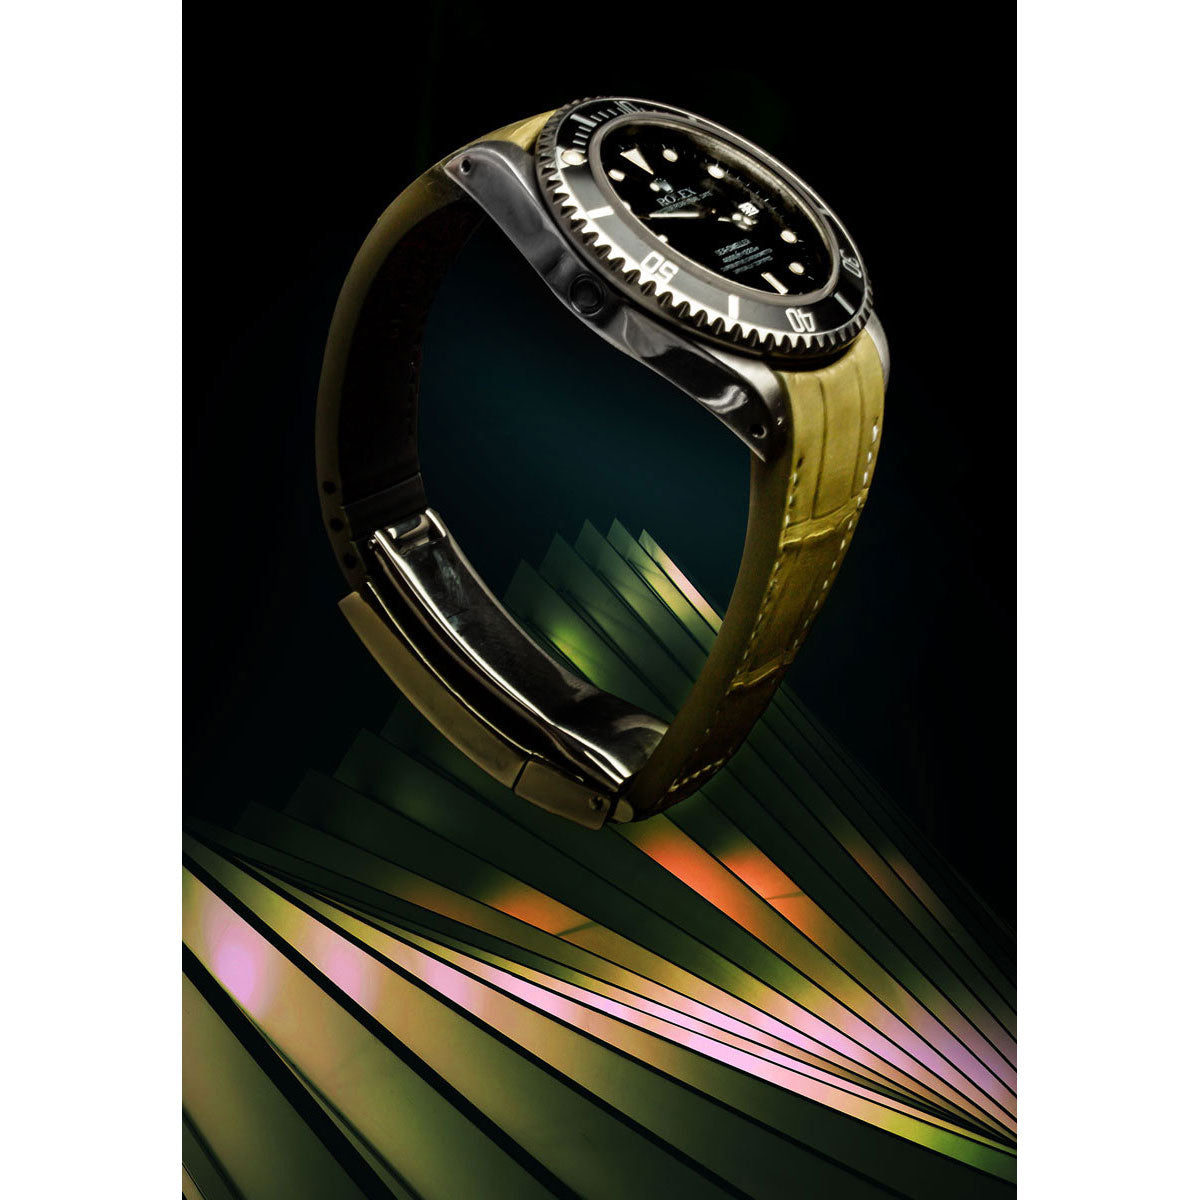 Rolex – Bracelet-montre cuir R Strap – Alligator couture blanche (noir, marron, bleu, blanc, kaki clair)